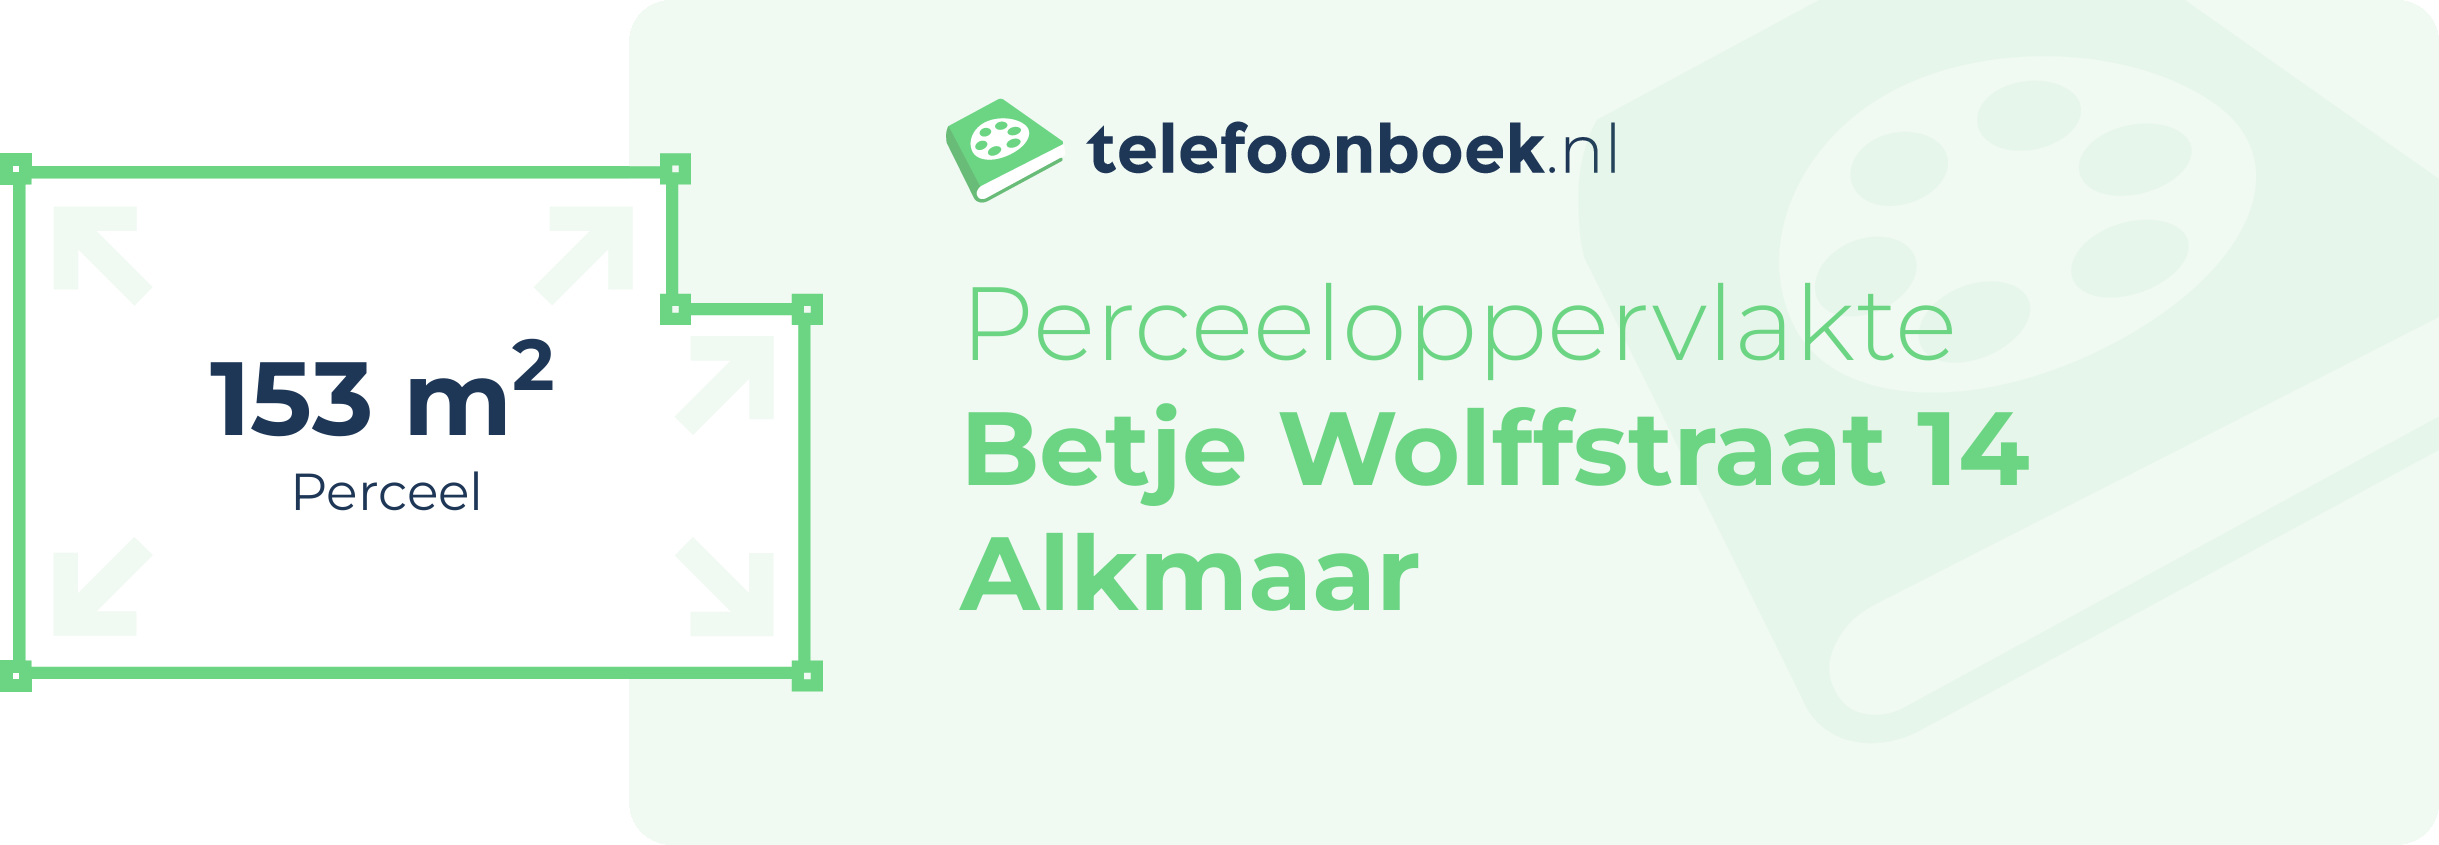 Perceeloppervlakte Betje Wolffstraat 14 Alkmaar